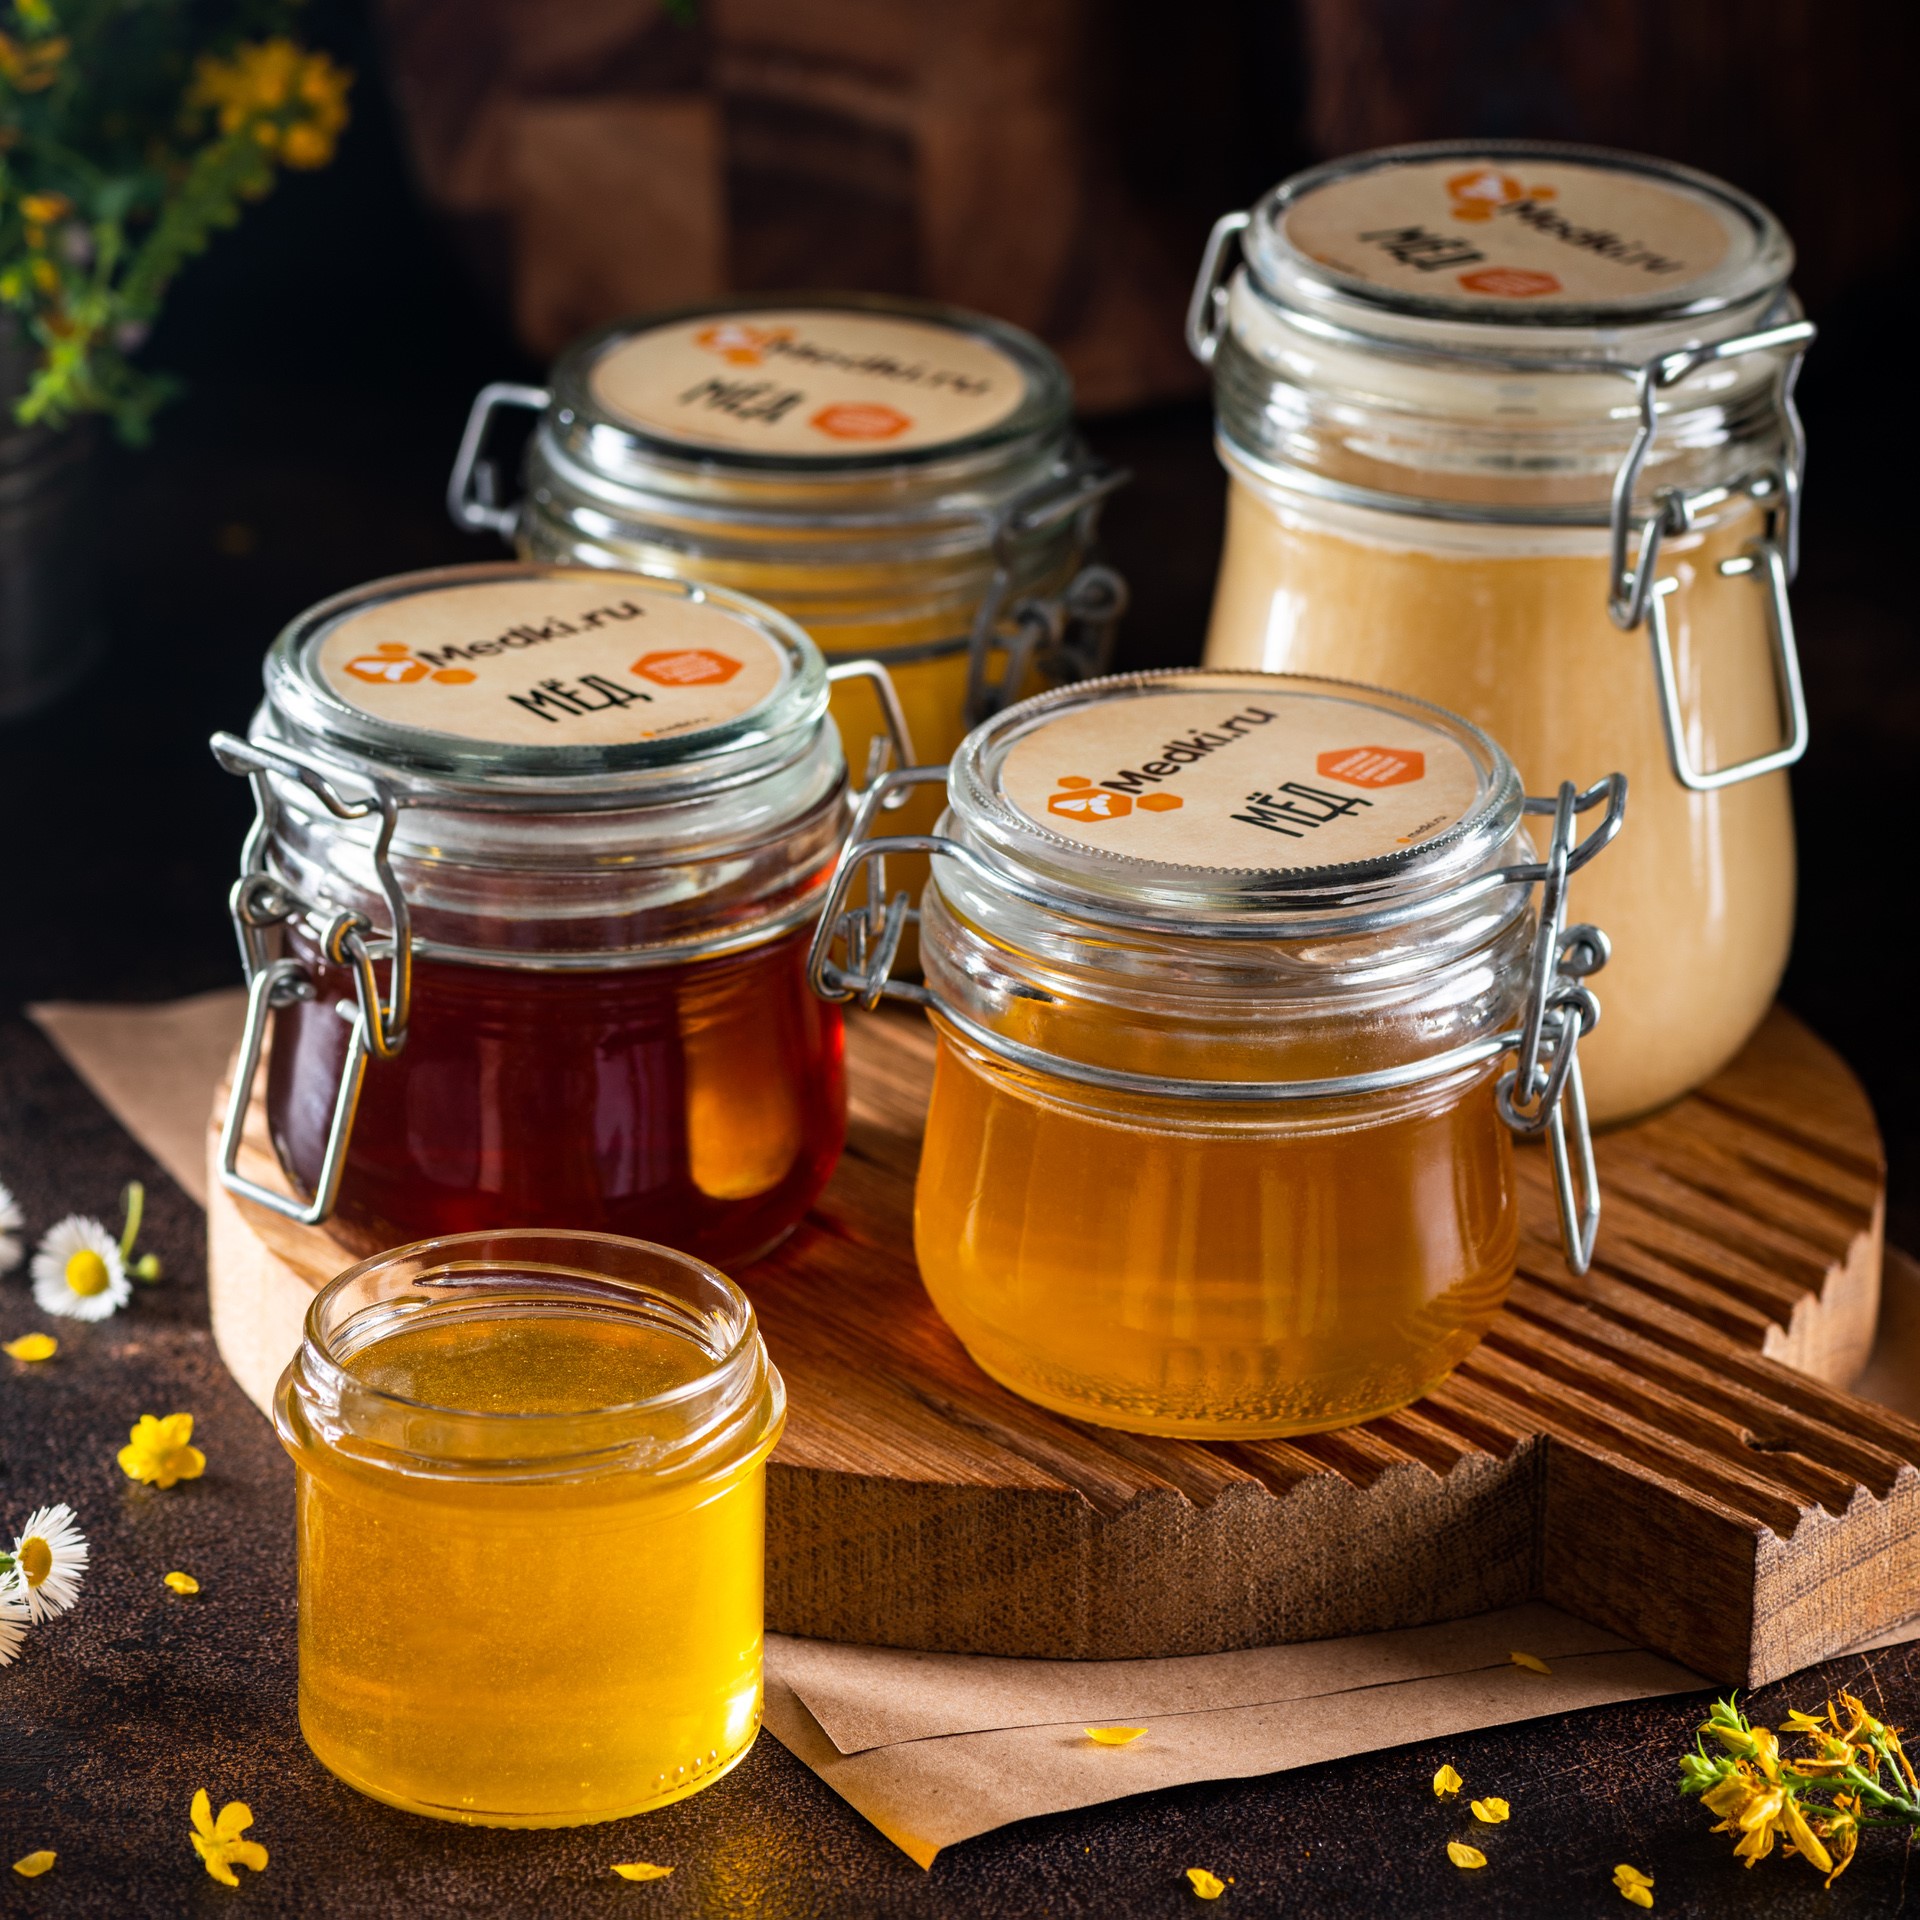 Сколько можно хранить мед при комнатной температуре?